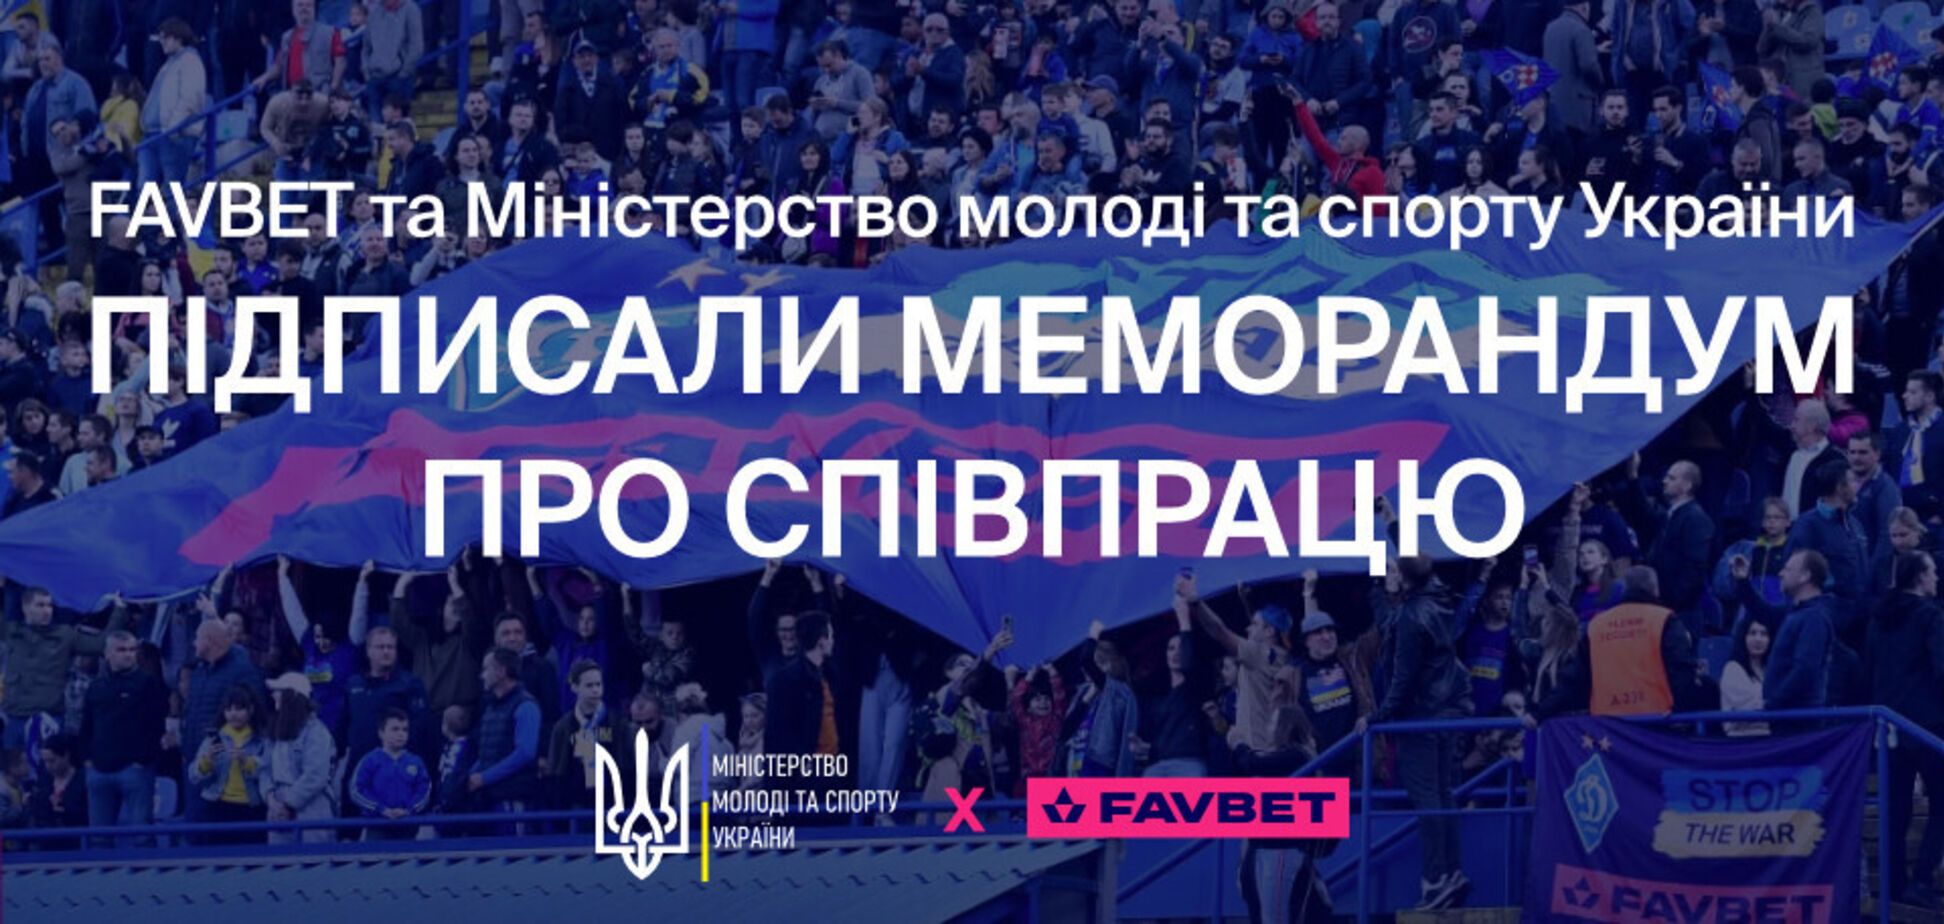 Минмолодьспорта подписало меморандум с Favbet о поддержке добродетели в спорте